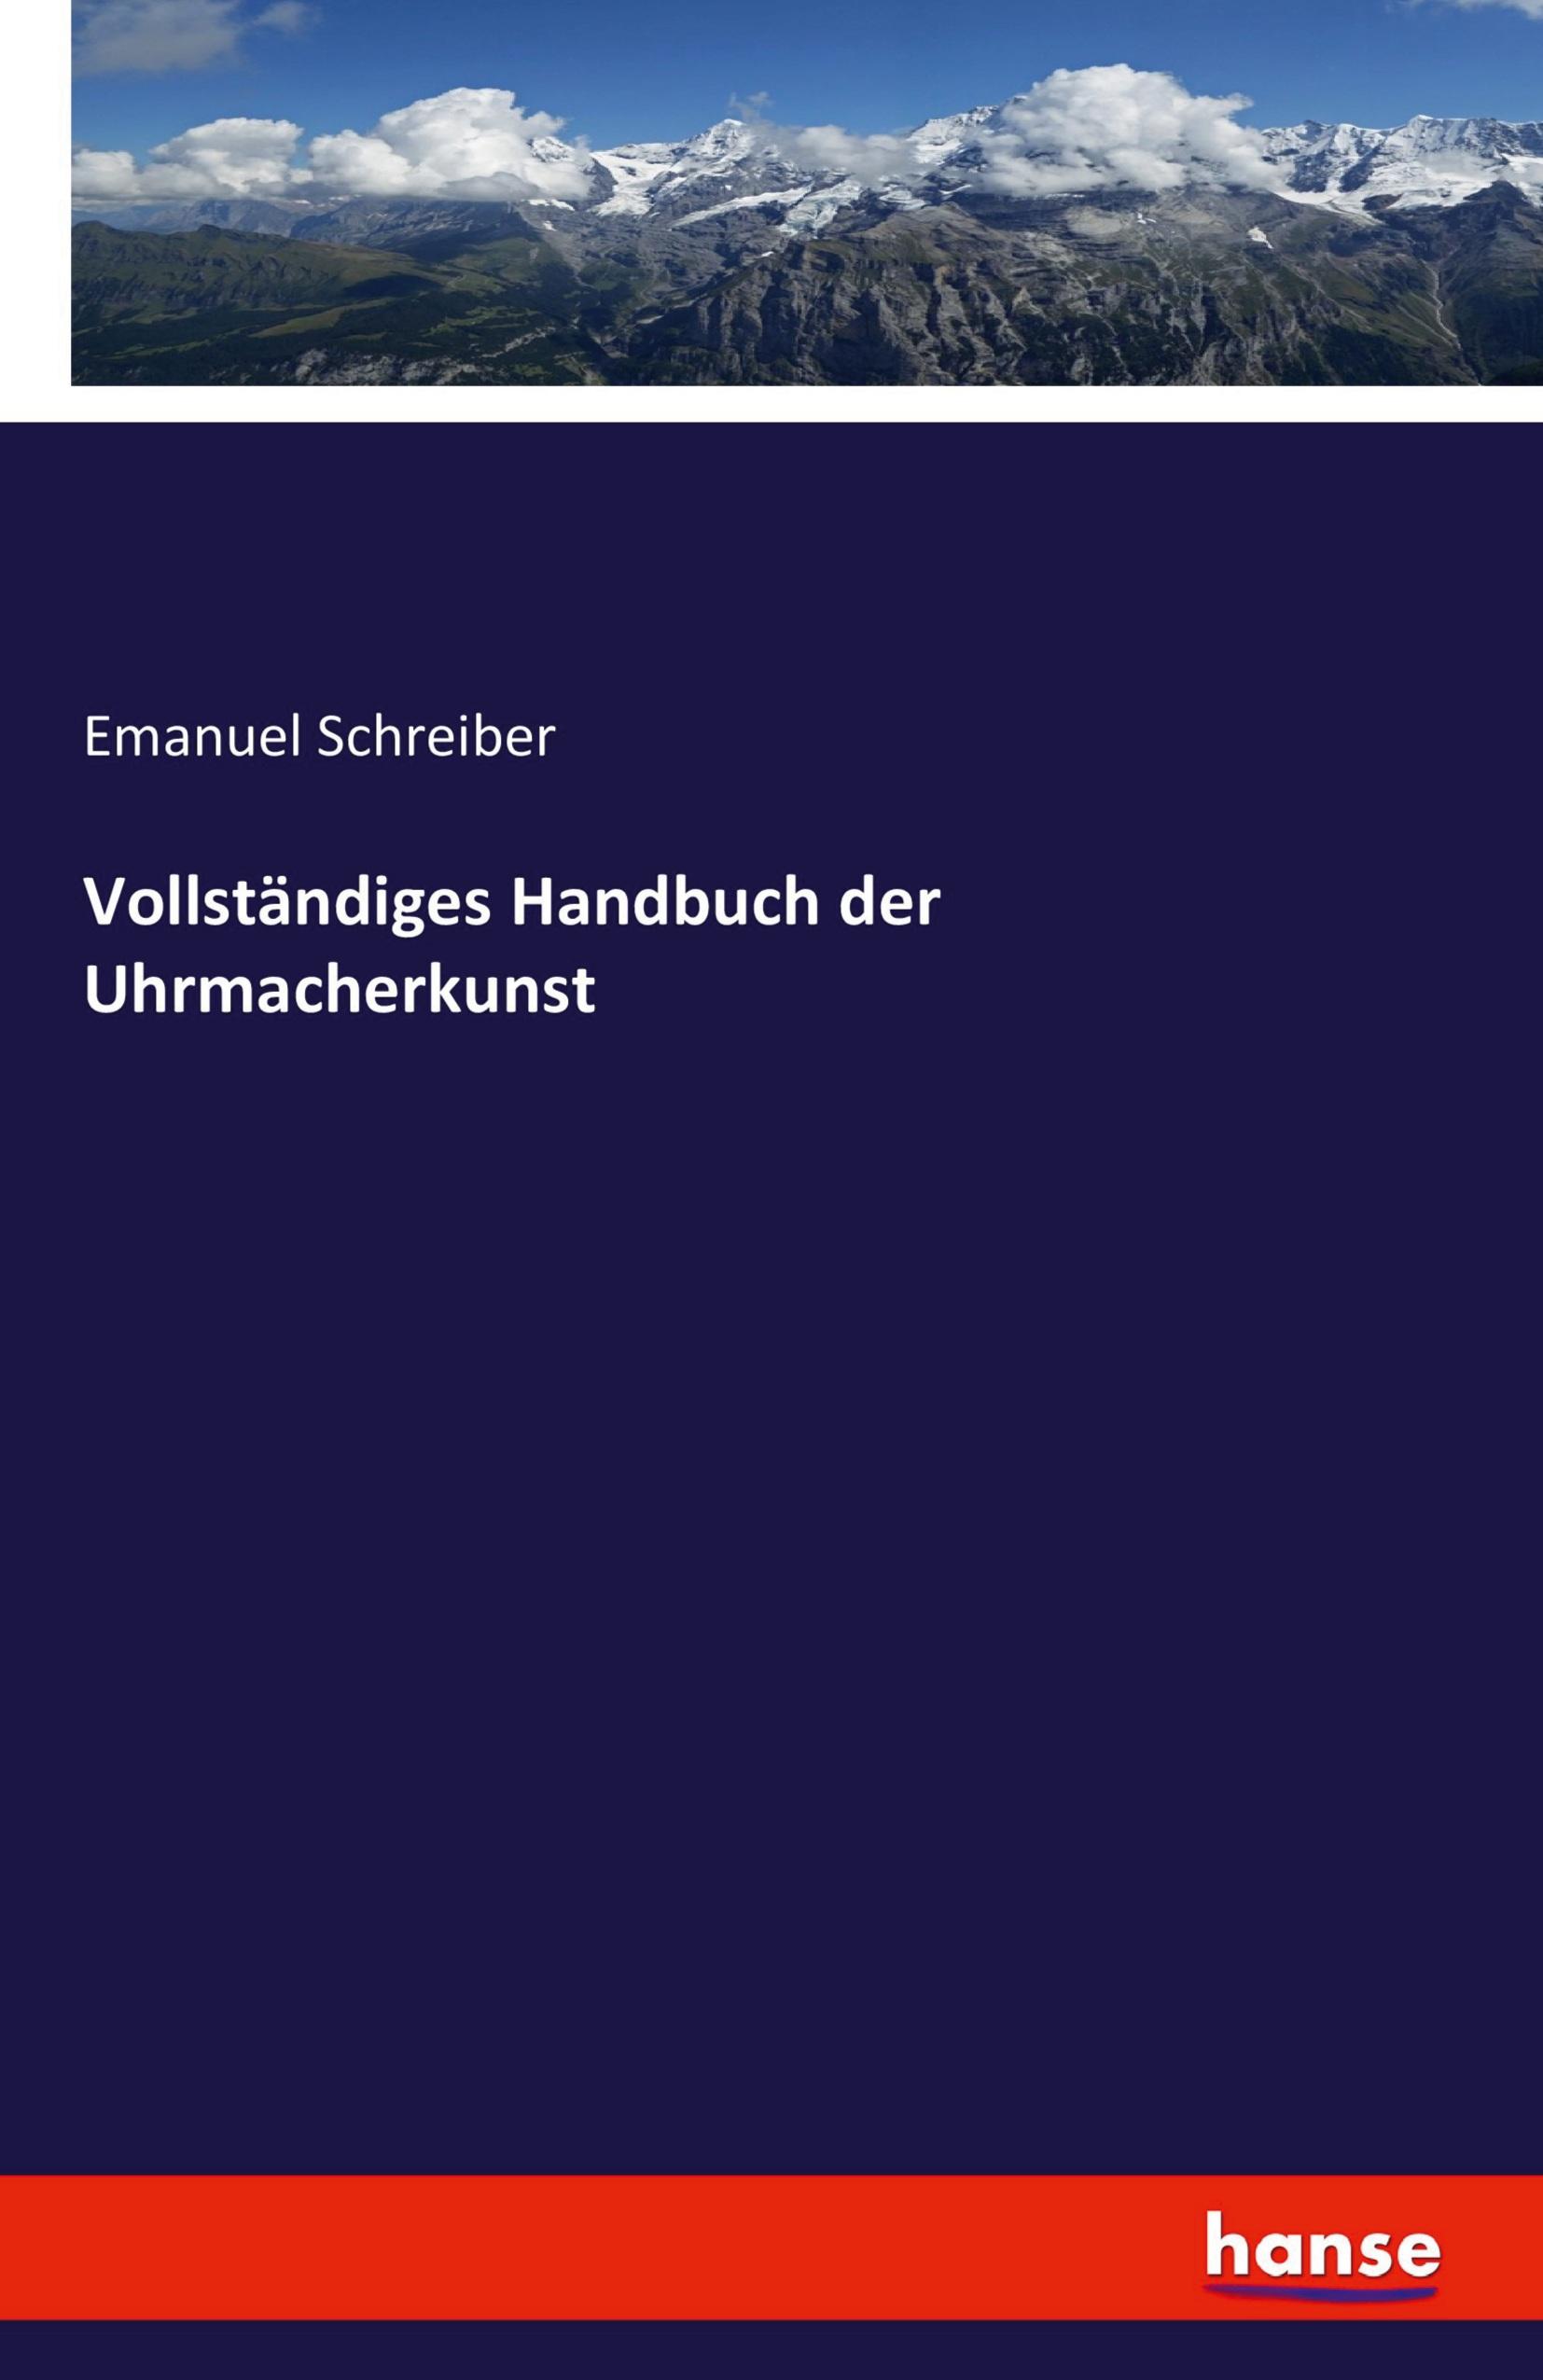 Vollständiges Handbuch der Uhrmacherkunst / Emanuel Schreiber / Taschenbuch / Paperback / 660 S. / Deutsch / 2023 / hansebooks / EAN 9783742878946 - Schreiber, Emanuel